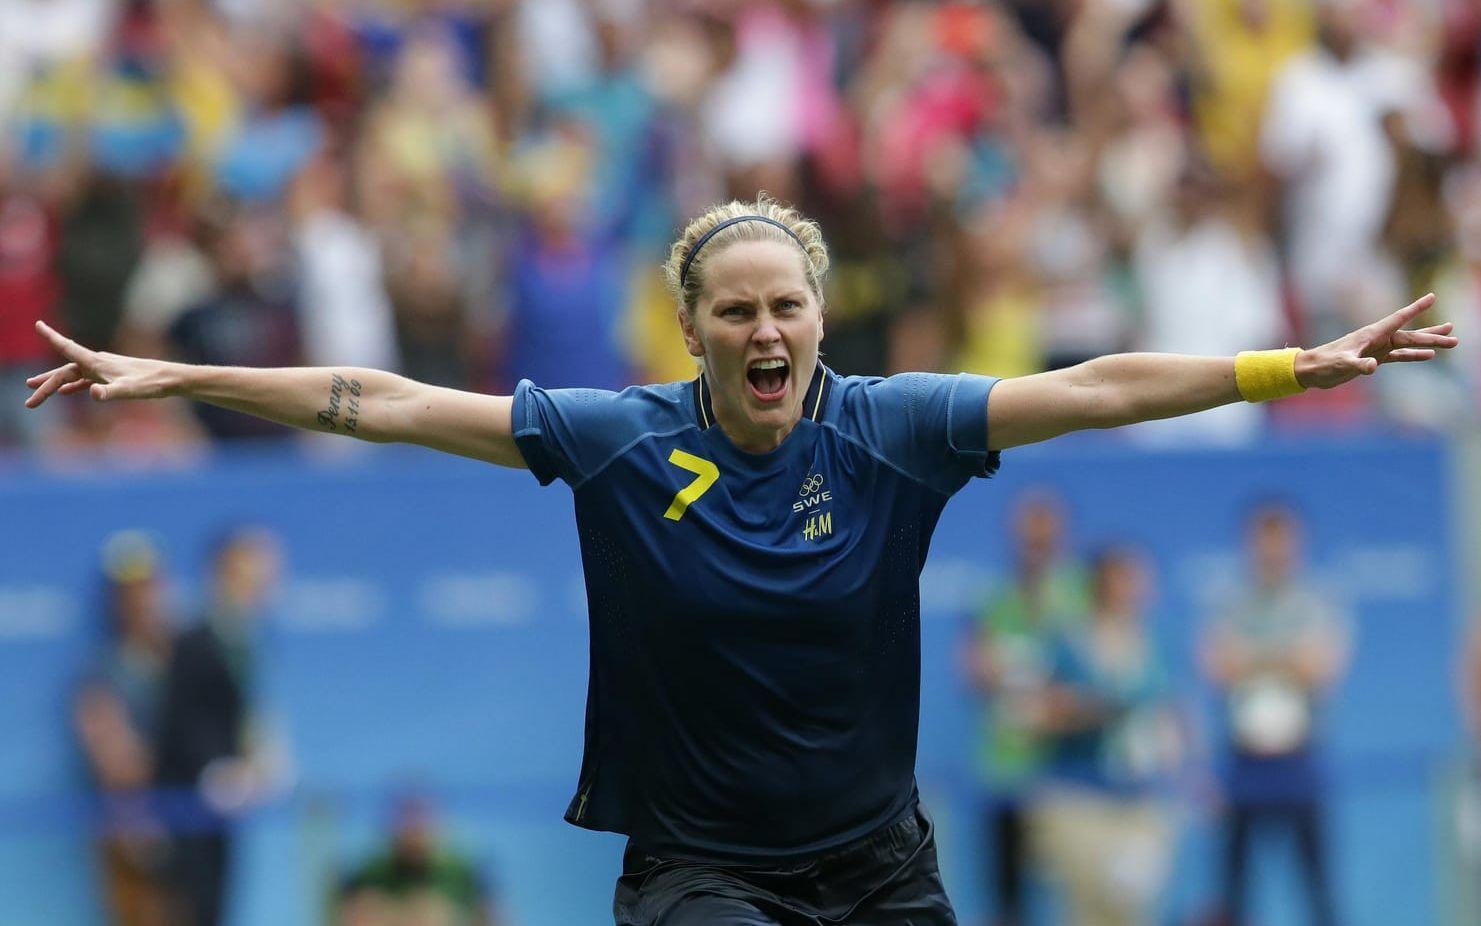 Stor dramatik under straffdramat i kvartsfinalen mellan USA och Sverige i OS-fotbollen. Bild: TT